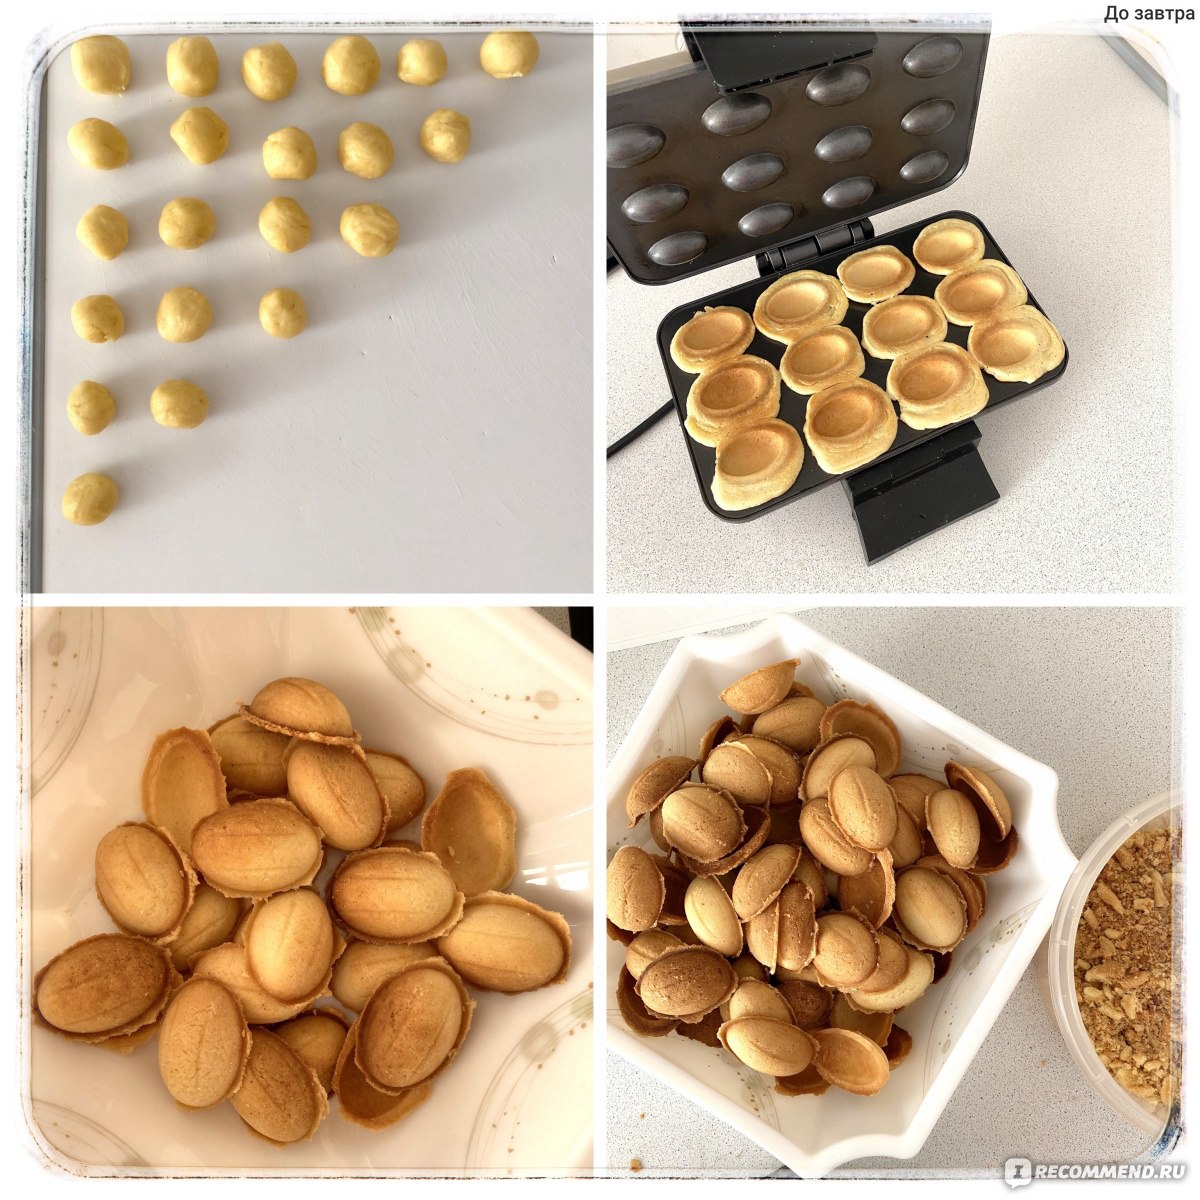 Процесс выпекания орешков 